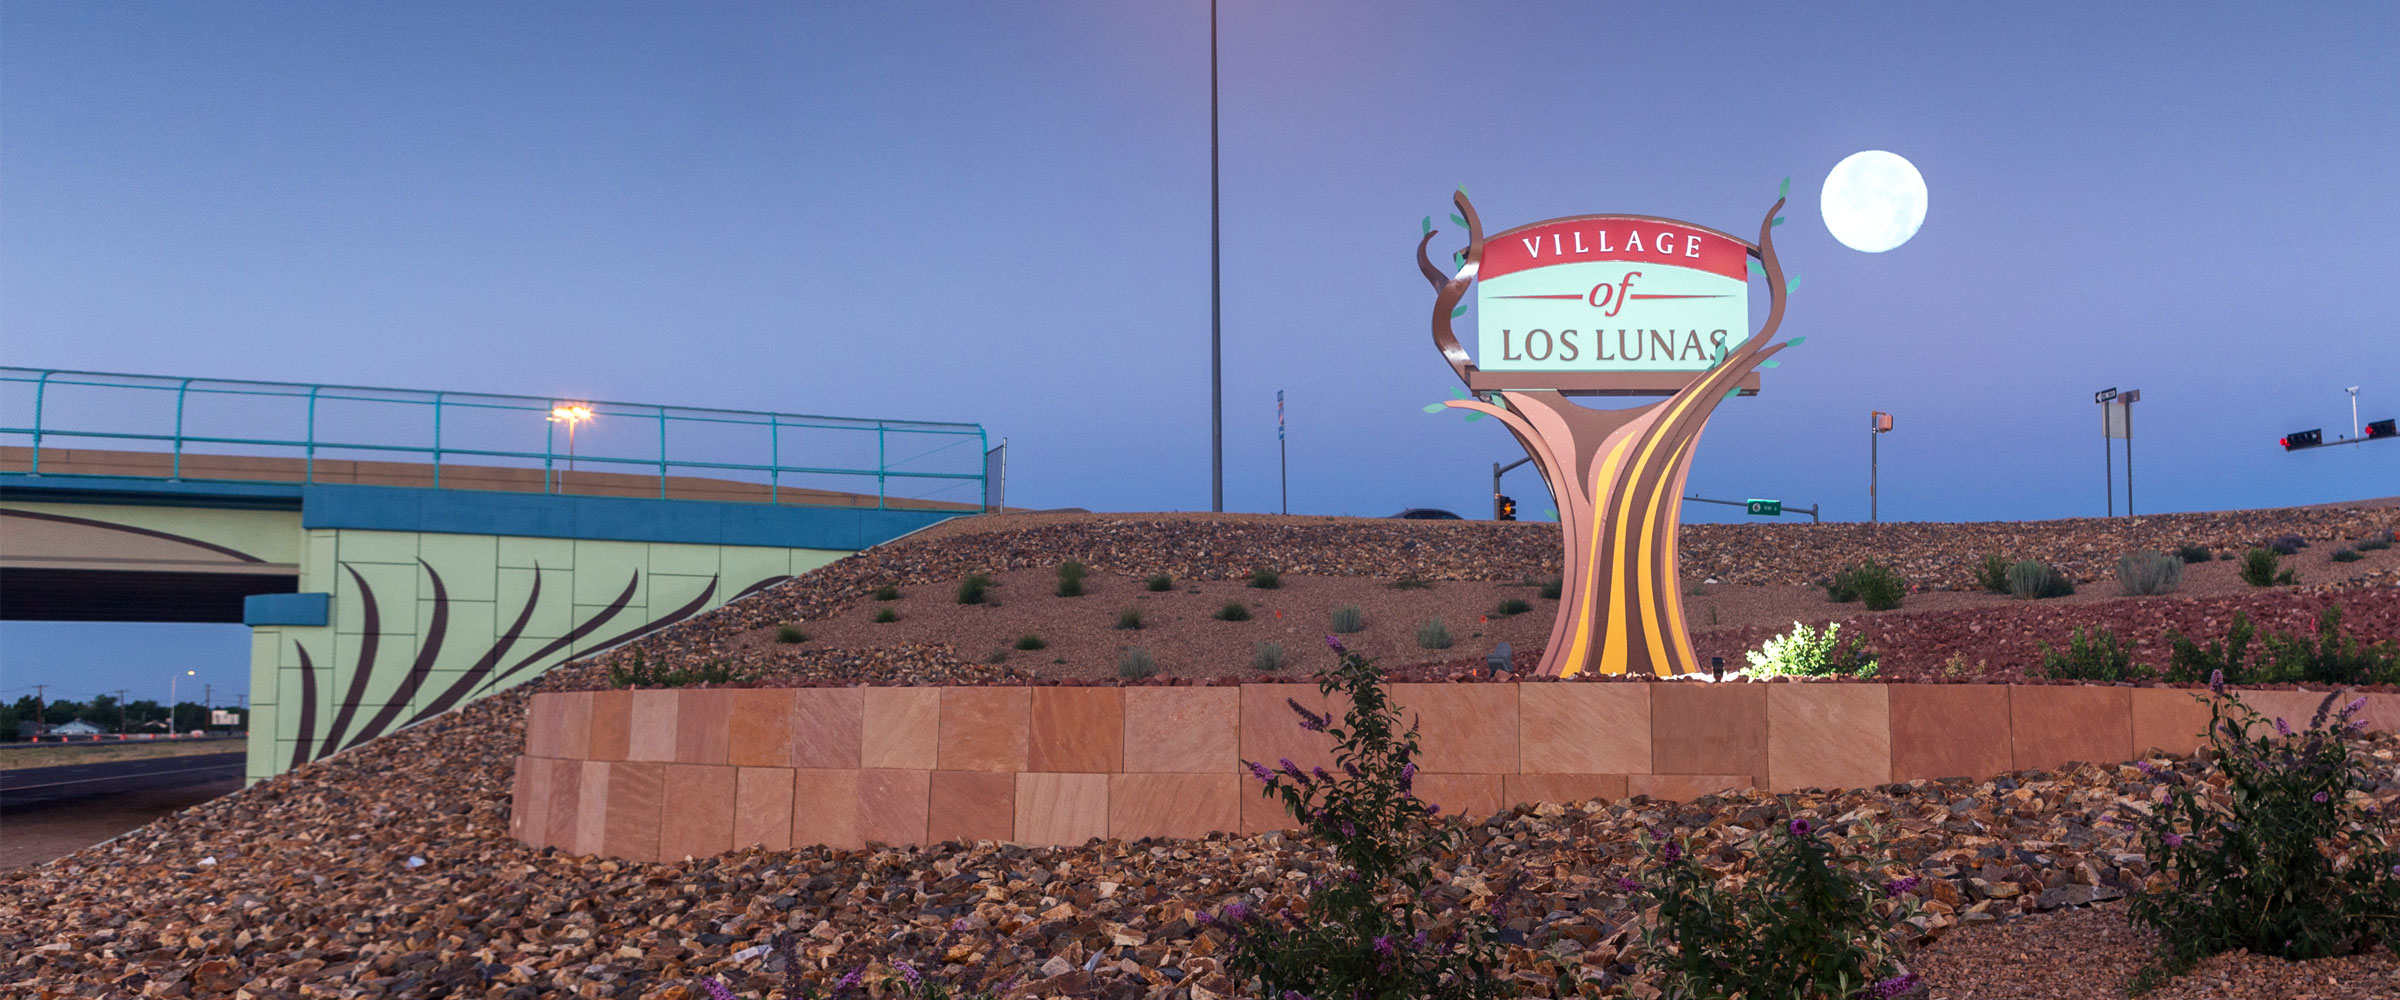 village-of-los-lunas-sign-1